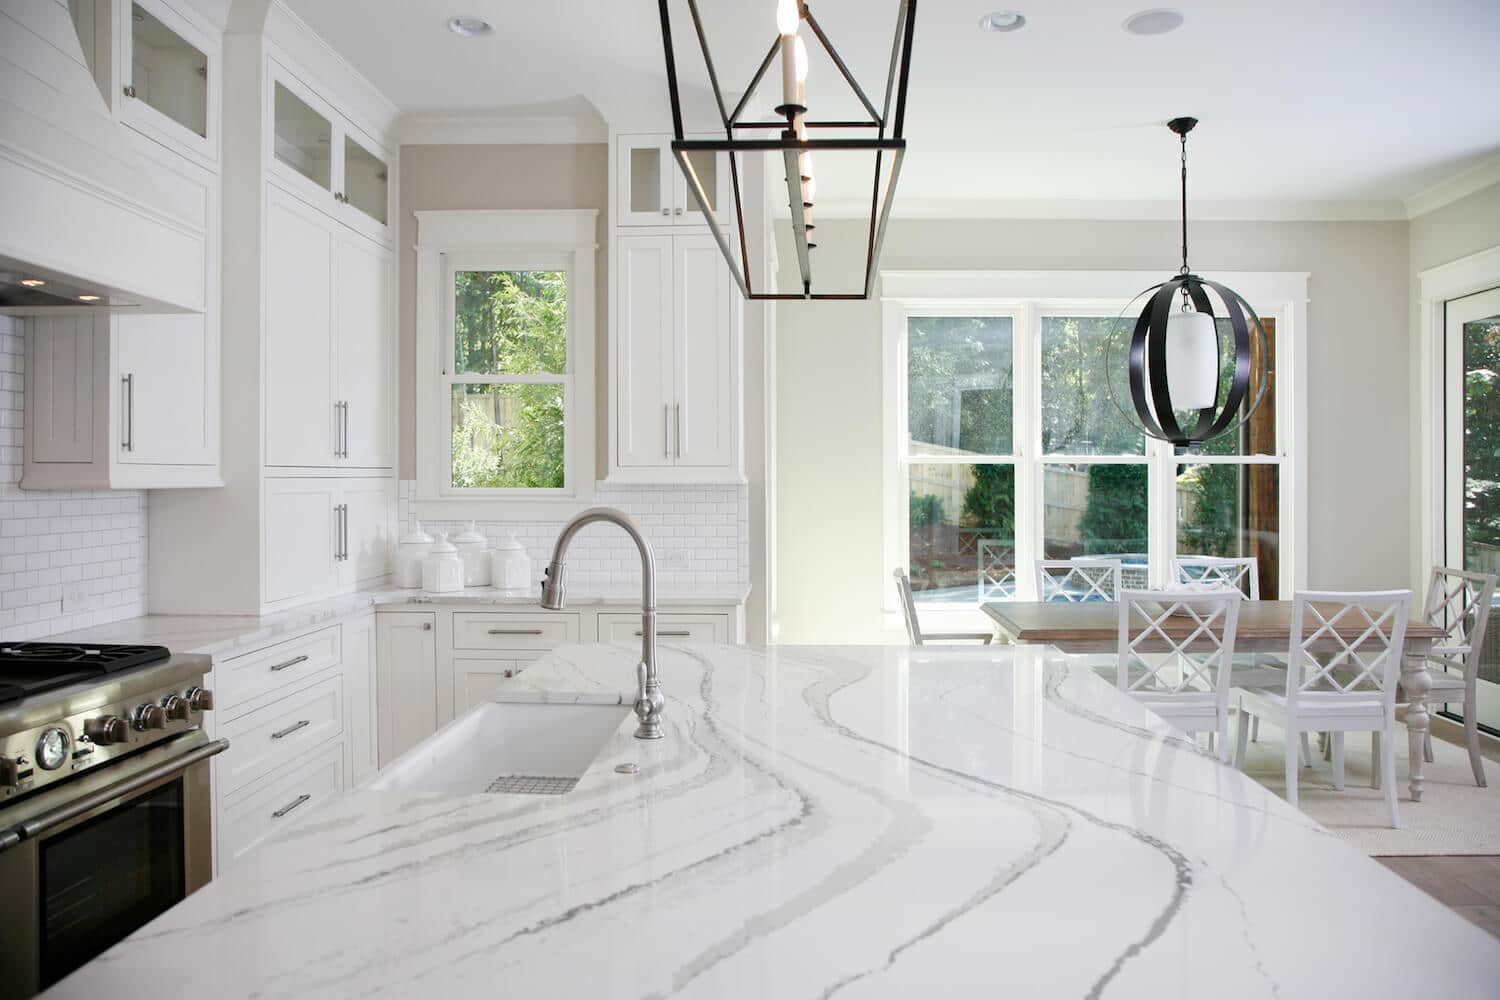 kitchen by design quartz